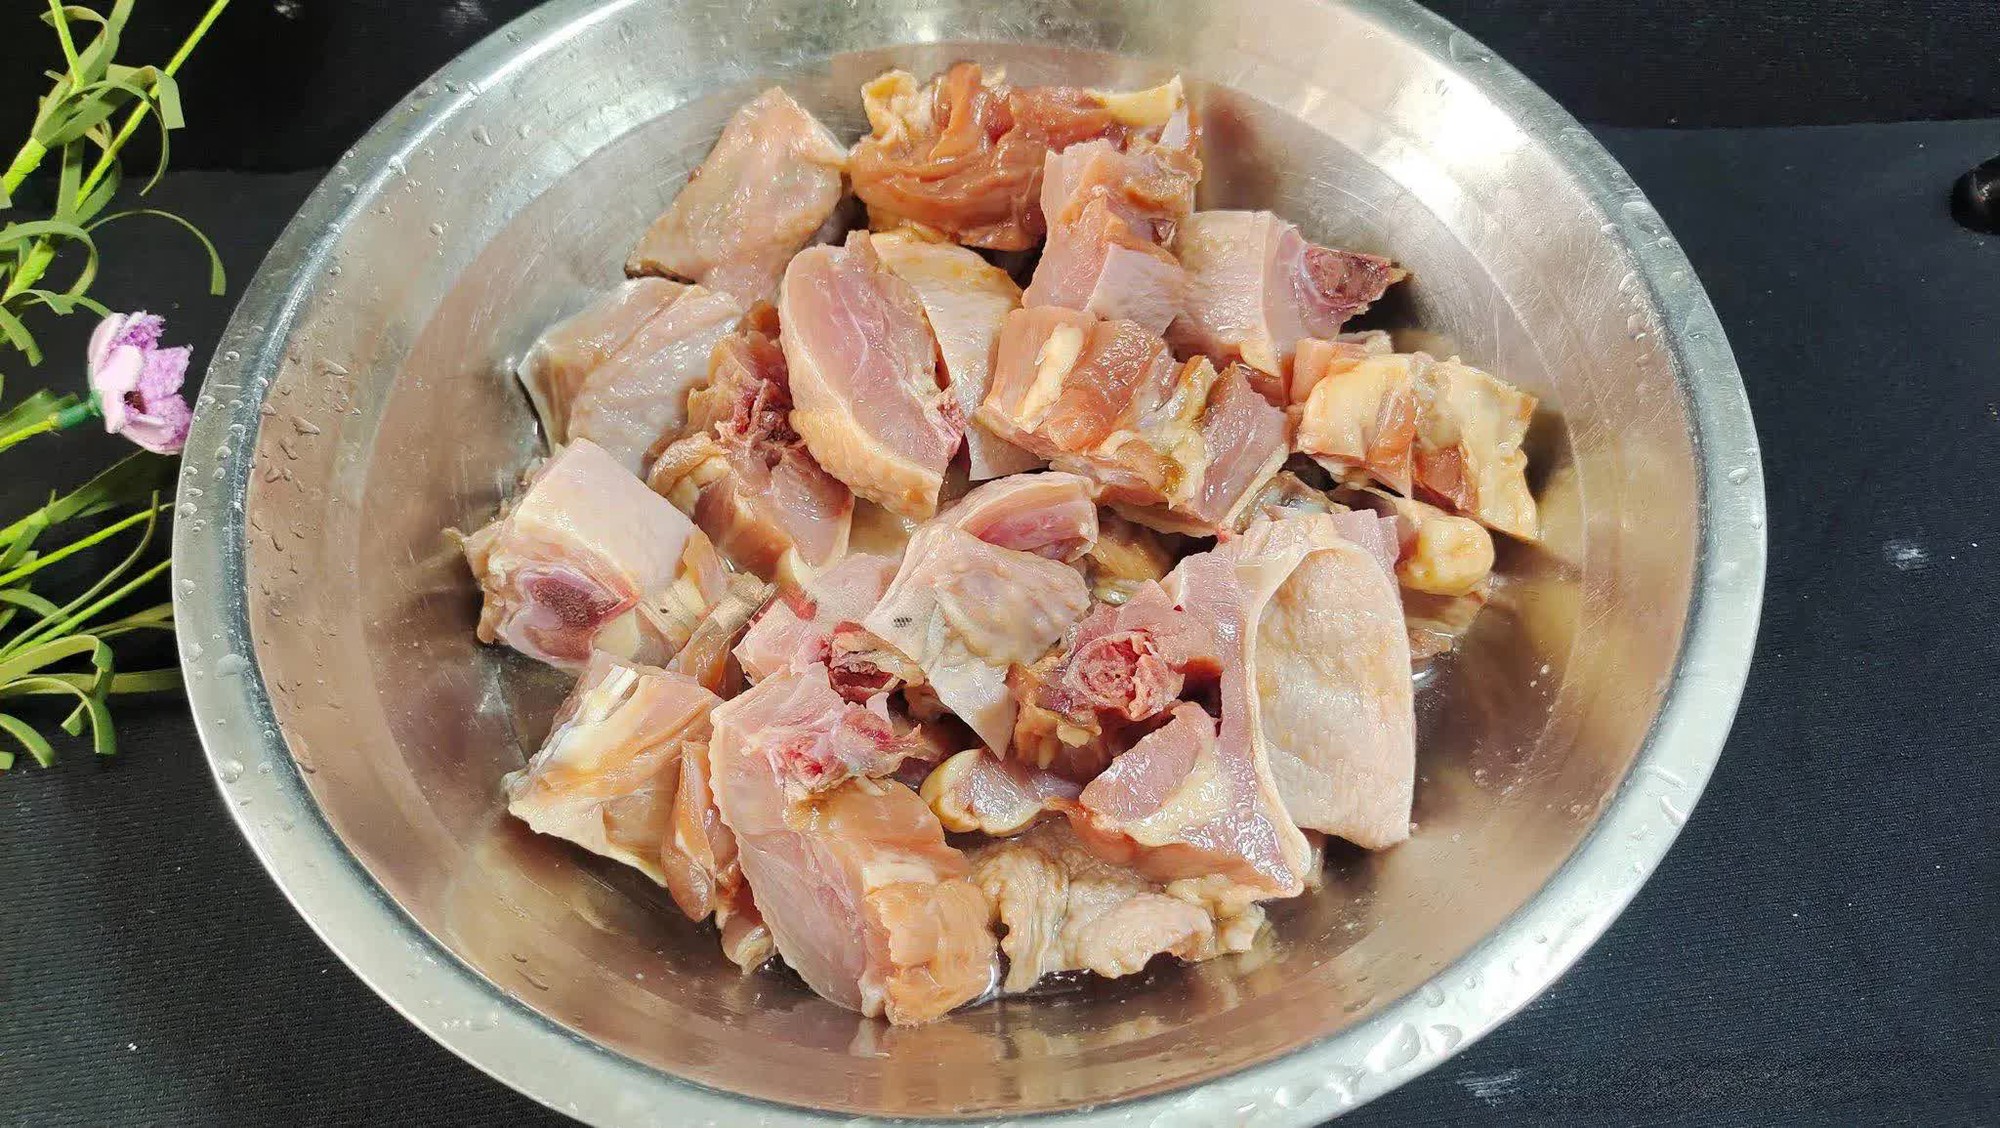  Thịt gà đem nấu cùng loại rau này ăn vừa mềm ngọt, thơm ngon mà lại giúp tăng cường hệ miễn dịch, chống lão hóa...  - Ảnh 3.